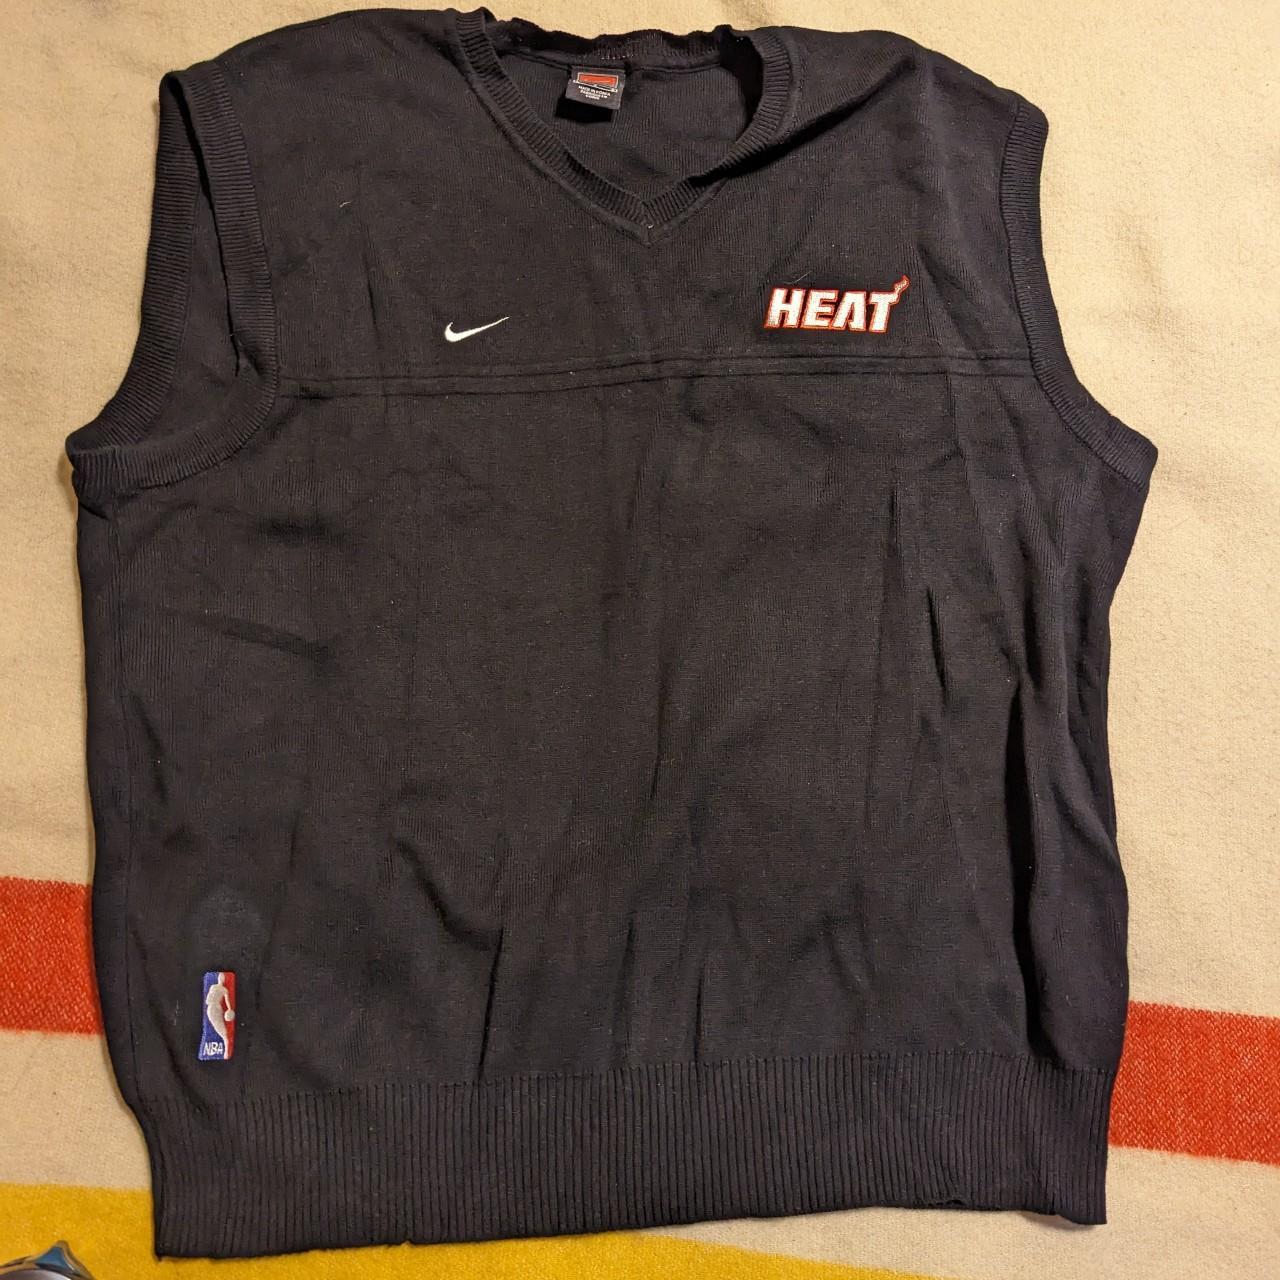 Heat practice jersey